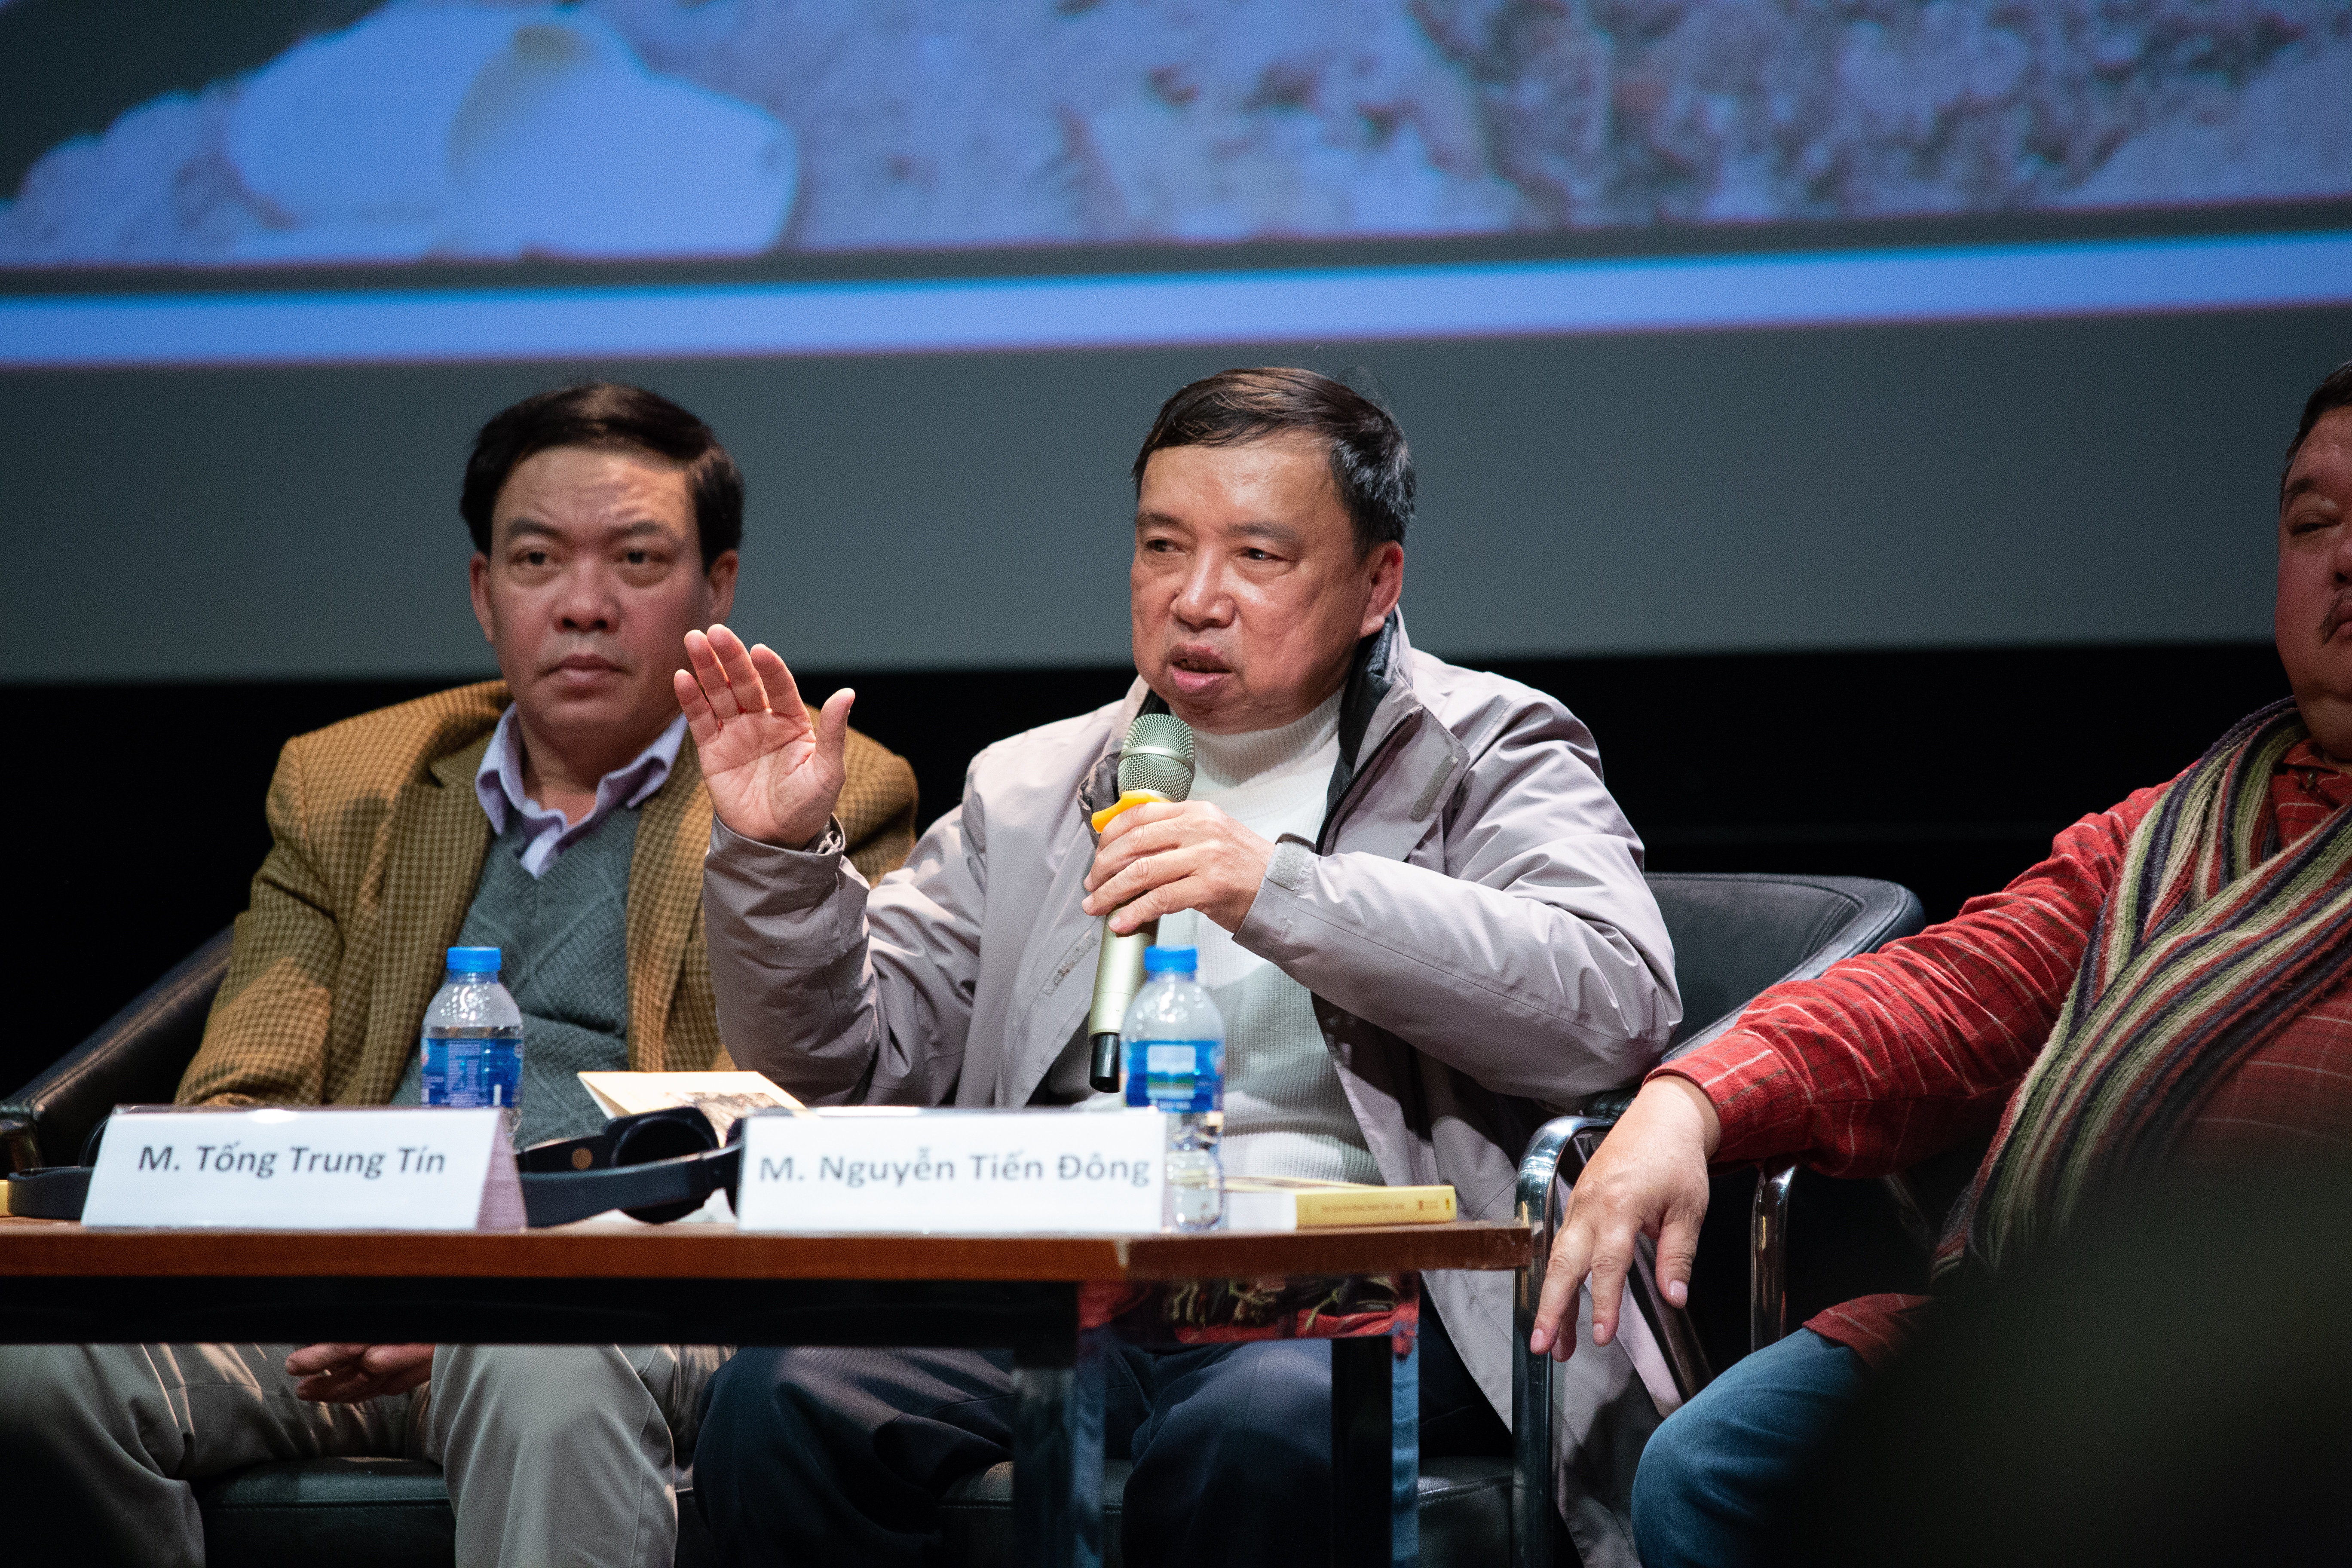 Phó GS. Tống Trung Tín phát biểu tại hội thảo về những phát hiện tại Hoàng thành. Ảnh: Tuấn Quang